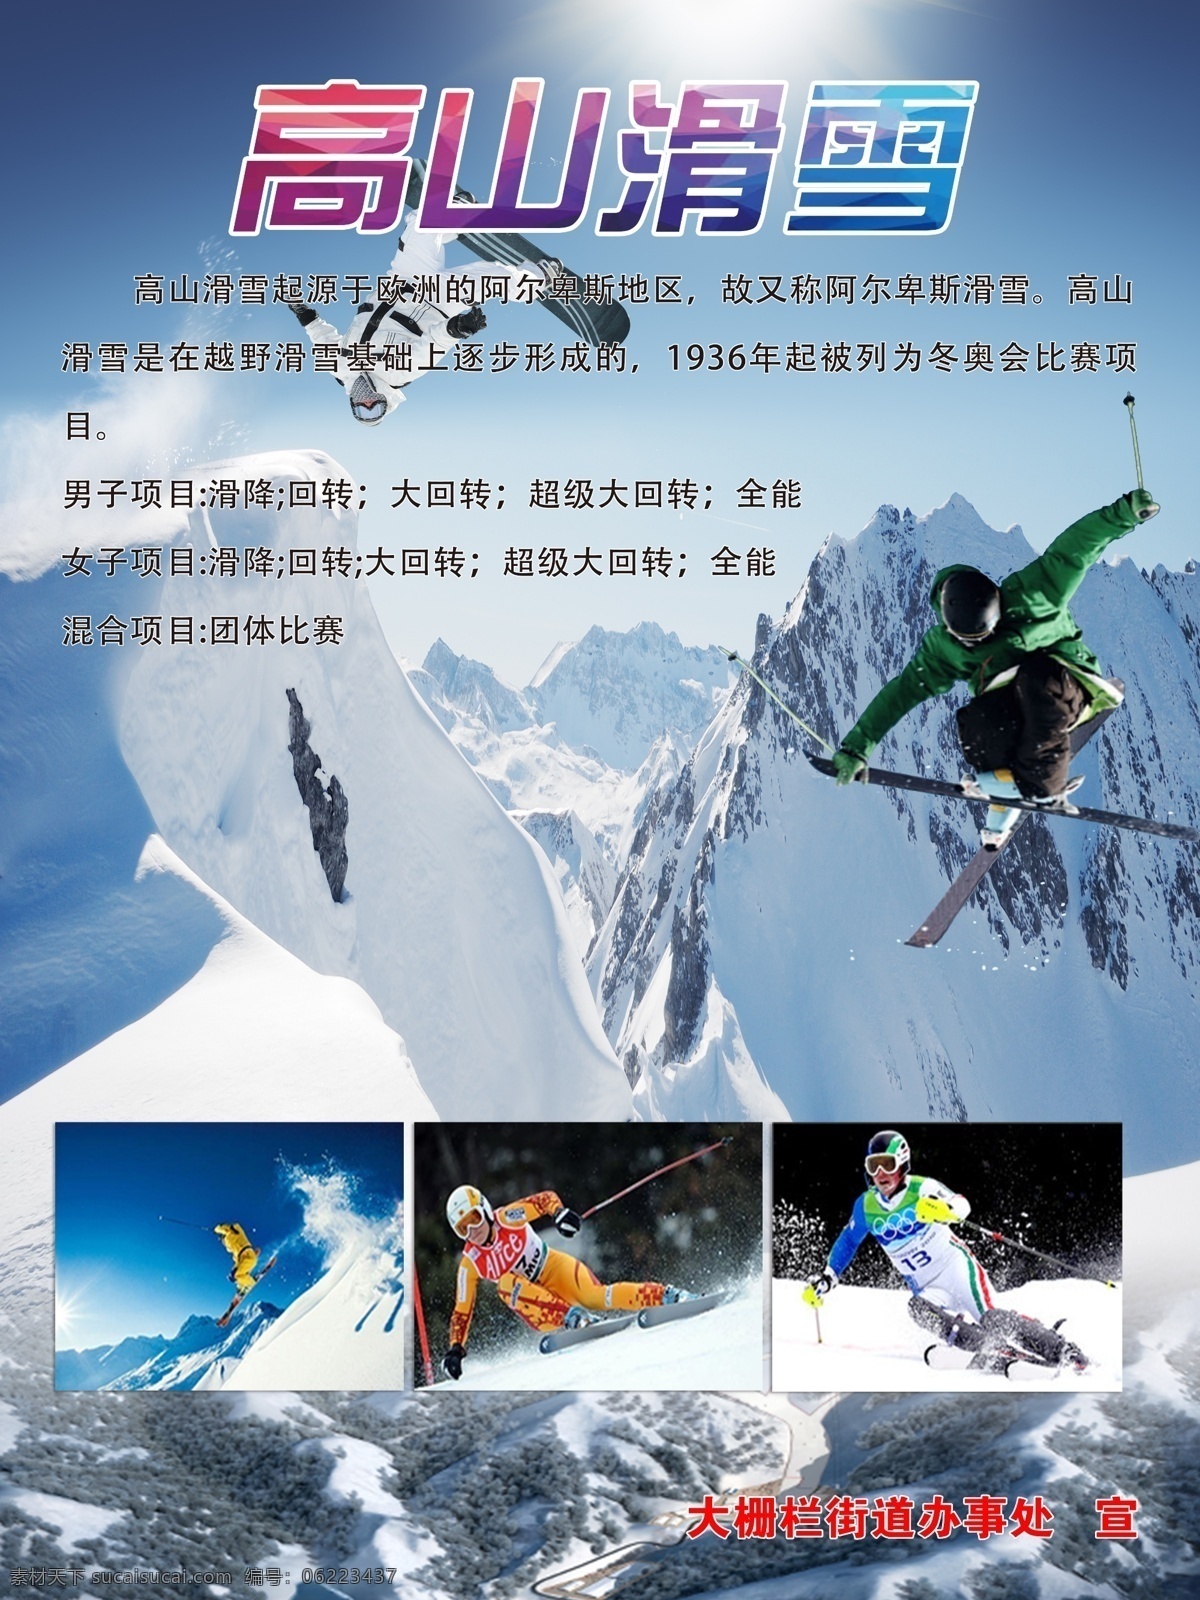 冬季高山滑雪 高山滑雪项目 滑雪 体育运动 体育项目